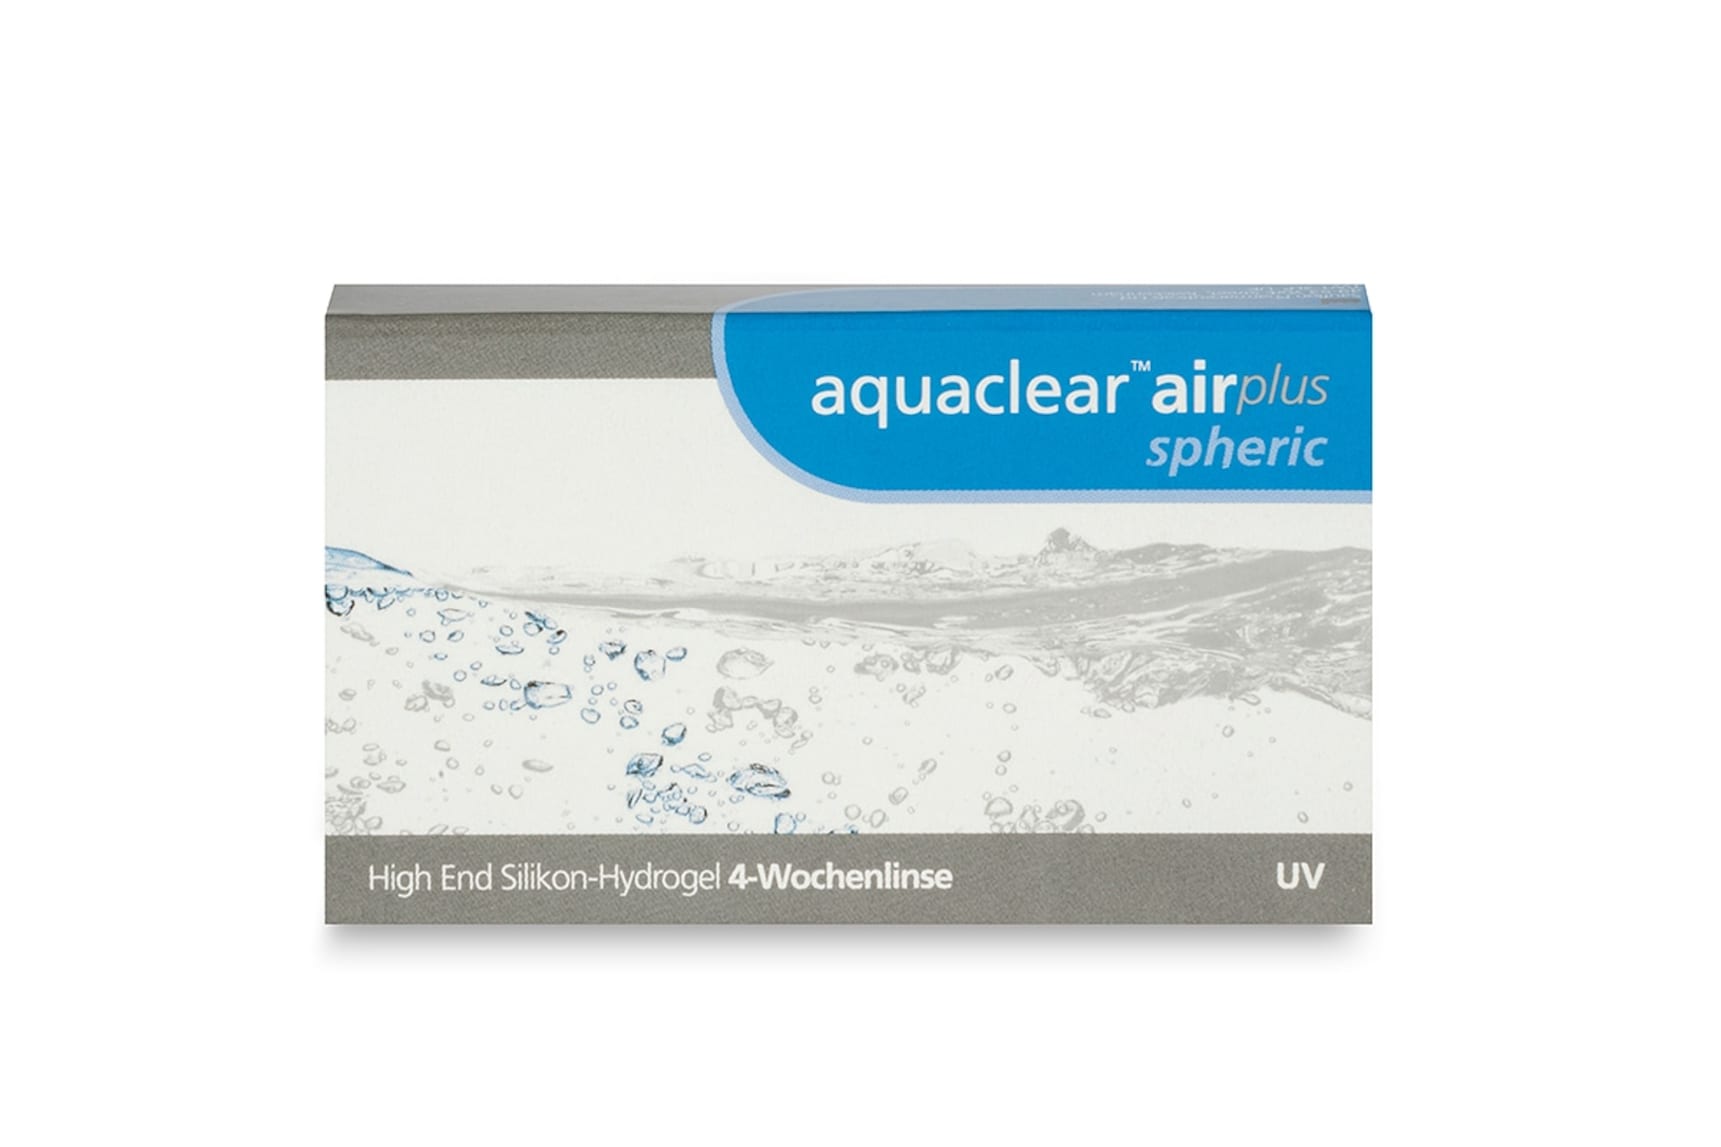 Aquaclear air plus